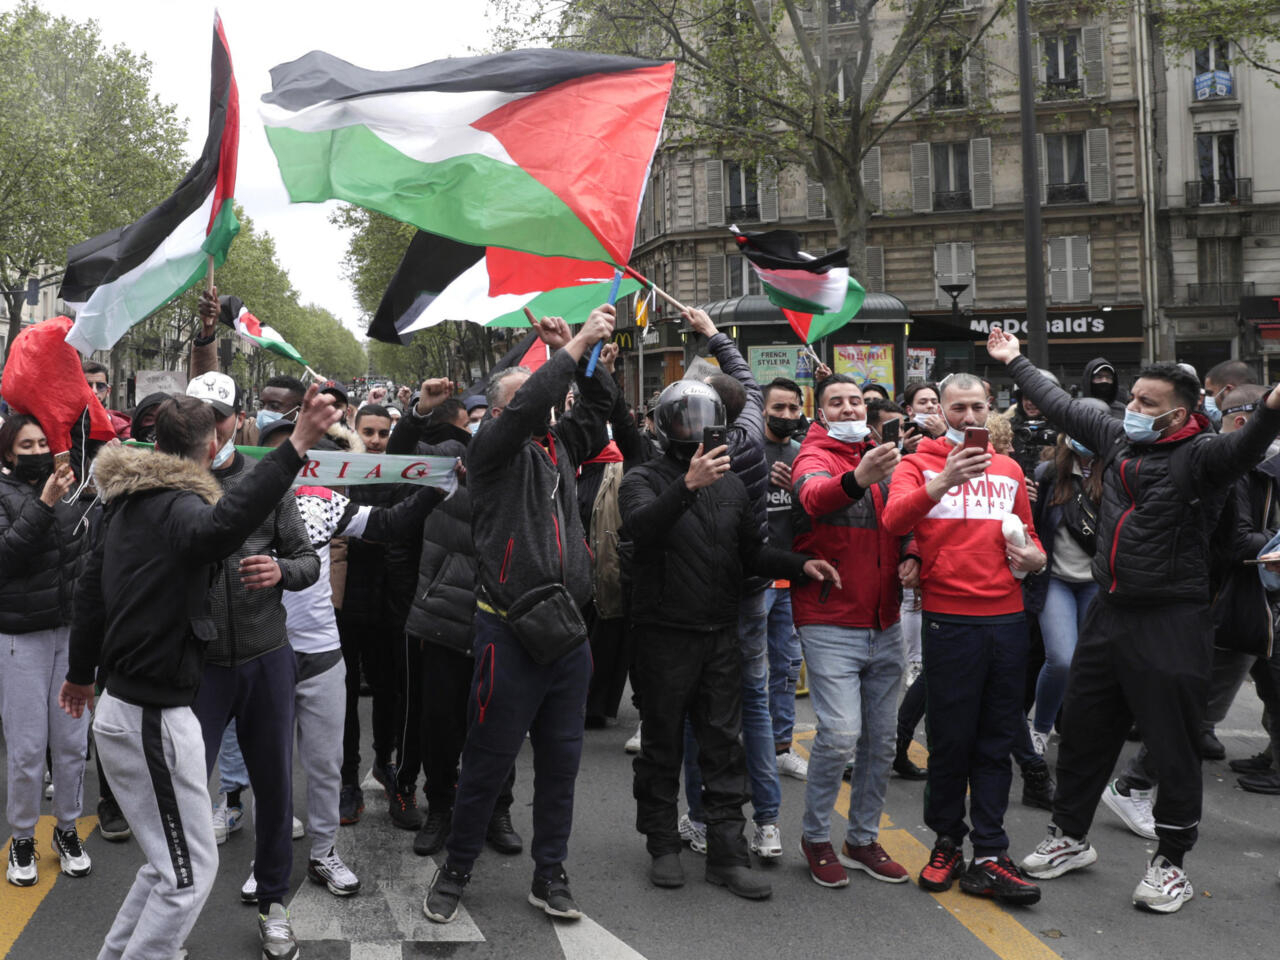 Протестувальники стріляють гаслами та розмахують палестинськими прапорами під час демонстрації солідарності з палестинцями, скликаними через триваючий конфлікт з Ізраїлем, у Парижі 15 травня 2021 року. - Поліція заборонила демонстрацію, заплановану в Парижі, побоюючись повторення сутичок під час аналогічного протесту в 2014 році, але організатори заявили, що марш не скасовують. (Фото Джеффруа Ван Дер Гассельта / AFP)